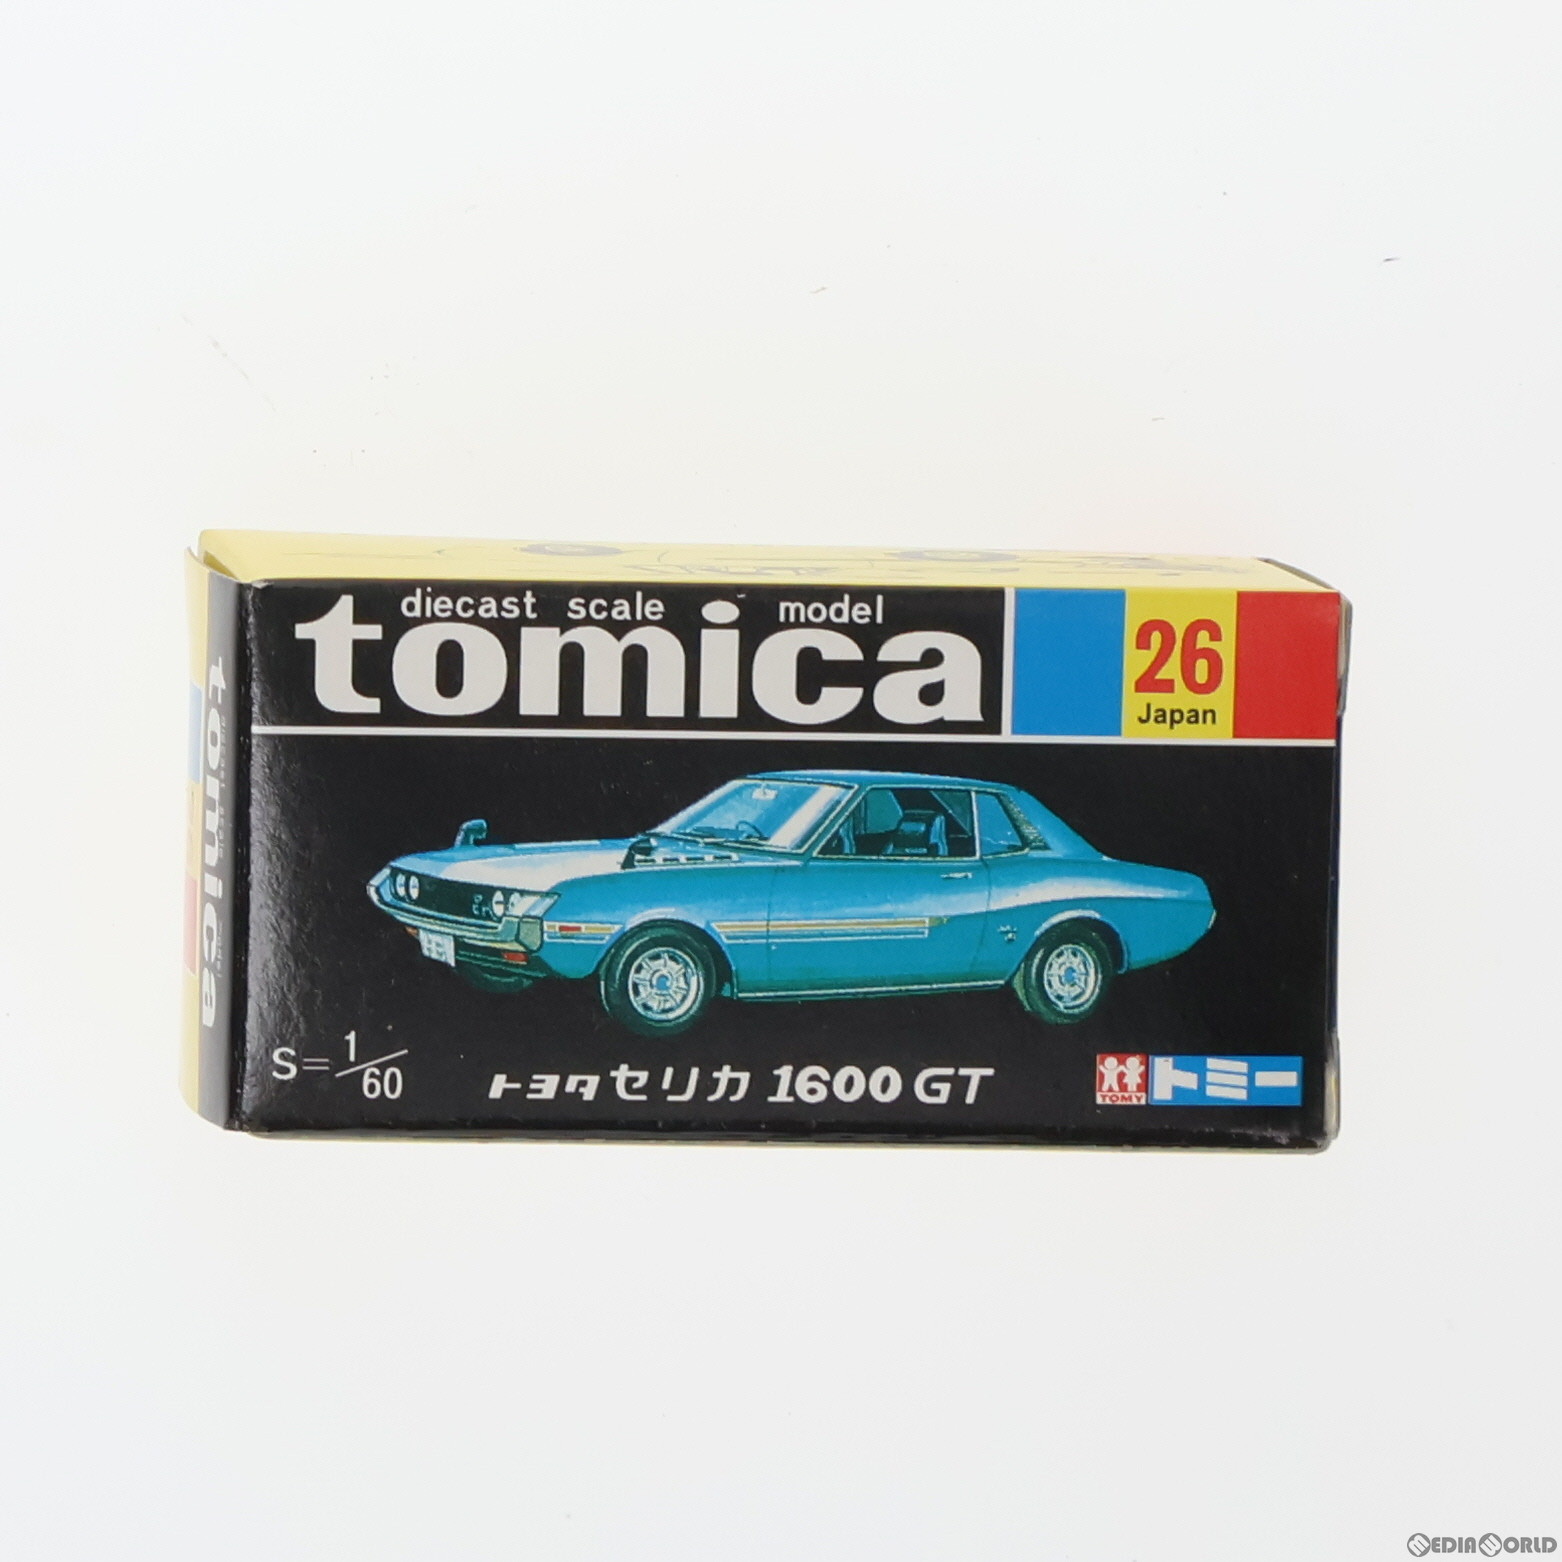 【中古】[MDL]トミカ No.26 1/60 トヨタ セリカ 1600GT(ターコイズ/黒箱) 復刻版 完成品 ミニカー トミー(19991231)